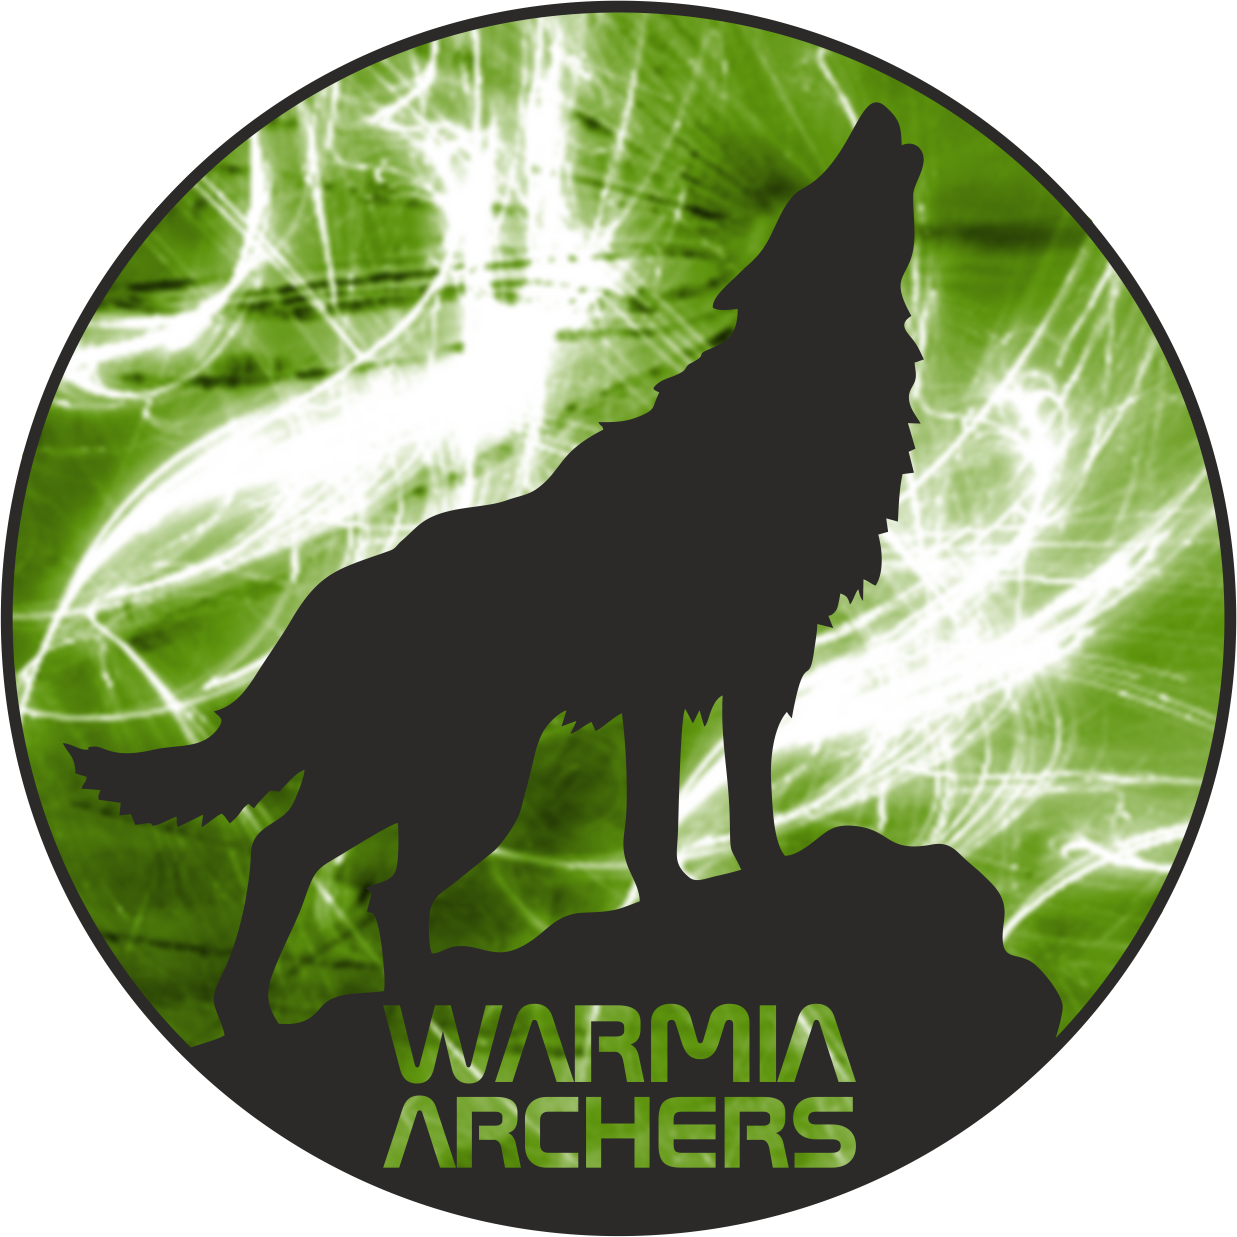 WA logo sam wilk napis przezroczysty green